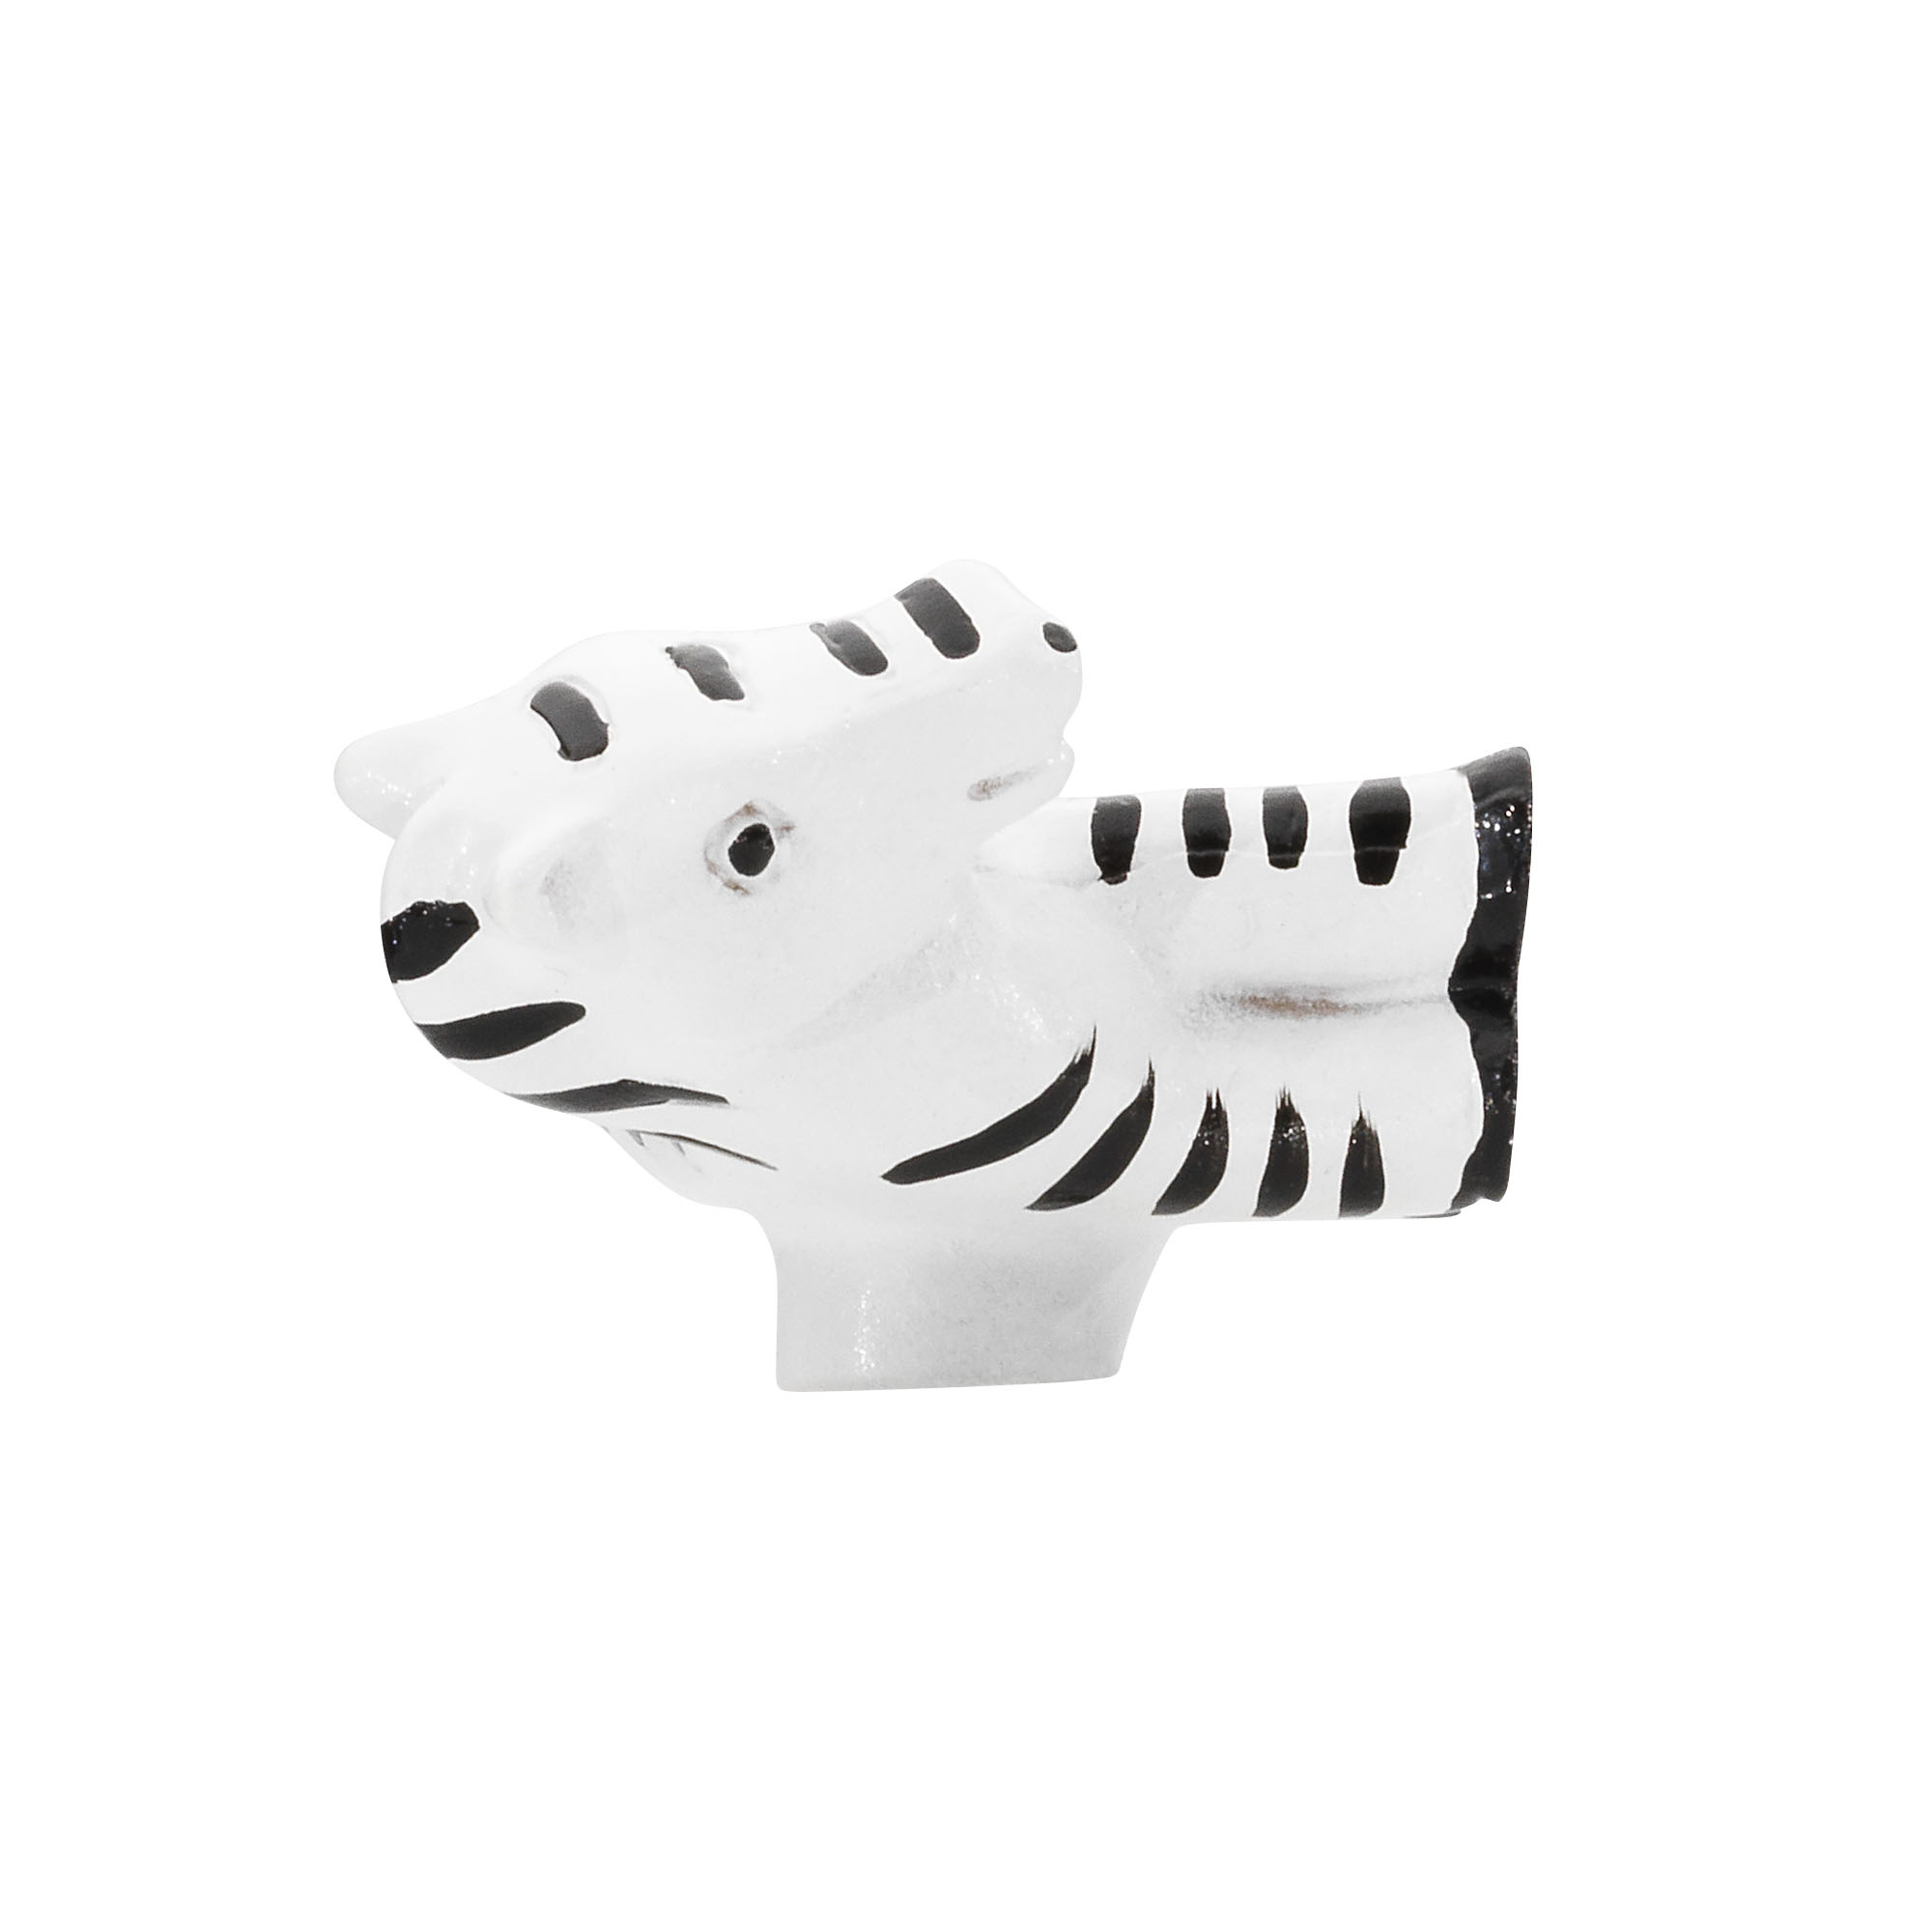 Möbelknopf Zebra schwarz-weiß + product picture